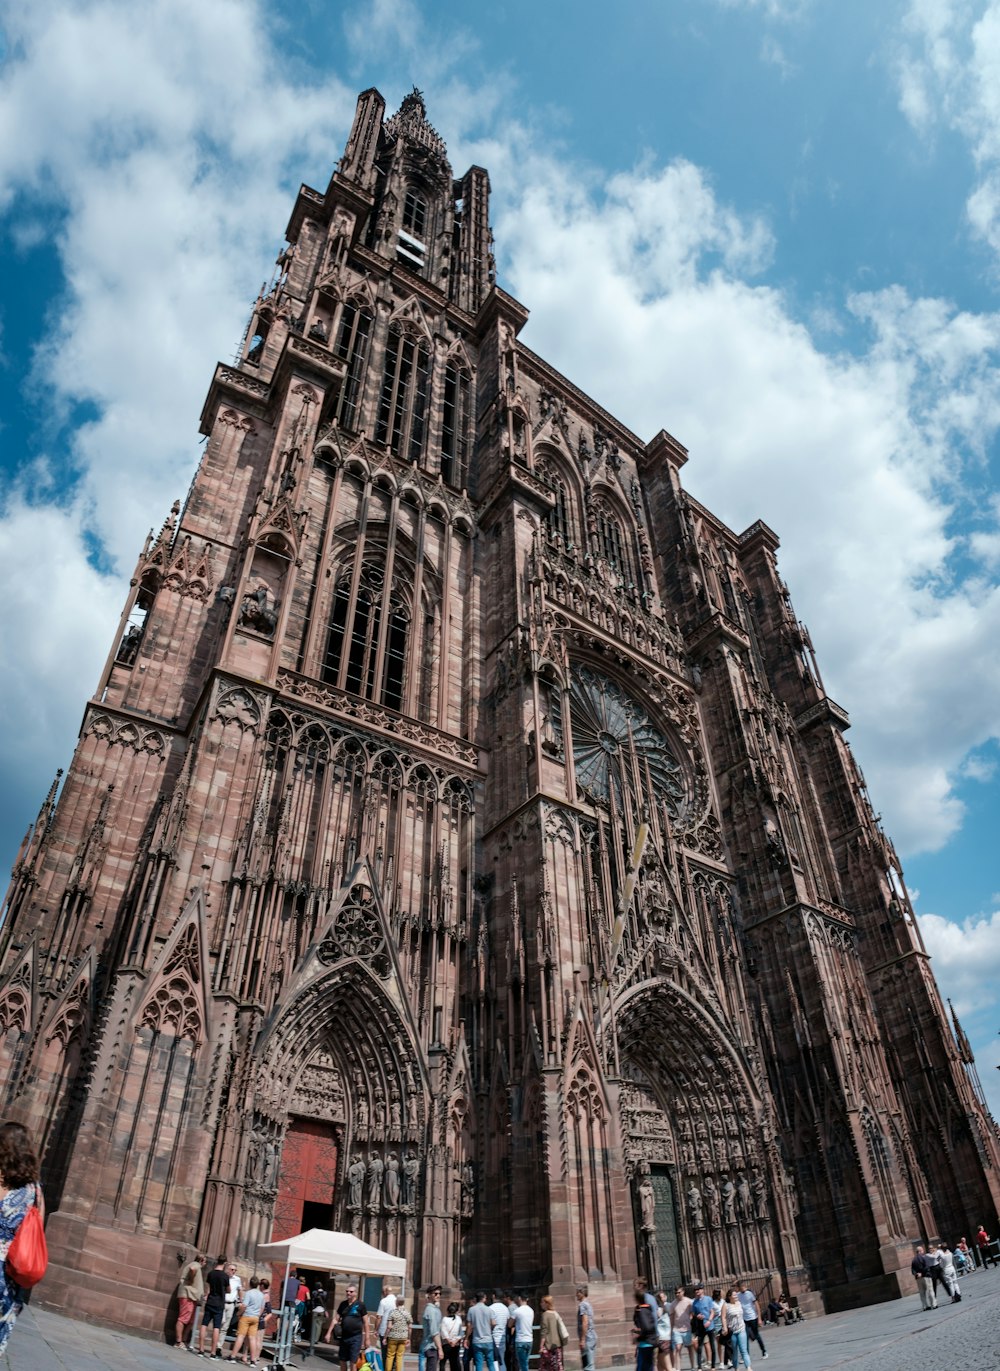 ゴシック様式の大聖堂のローアングル写真